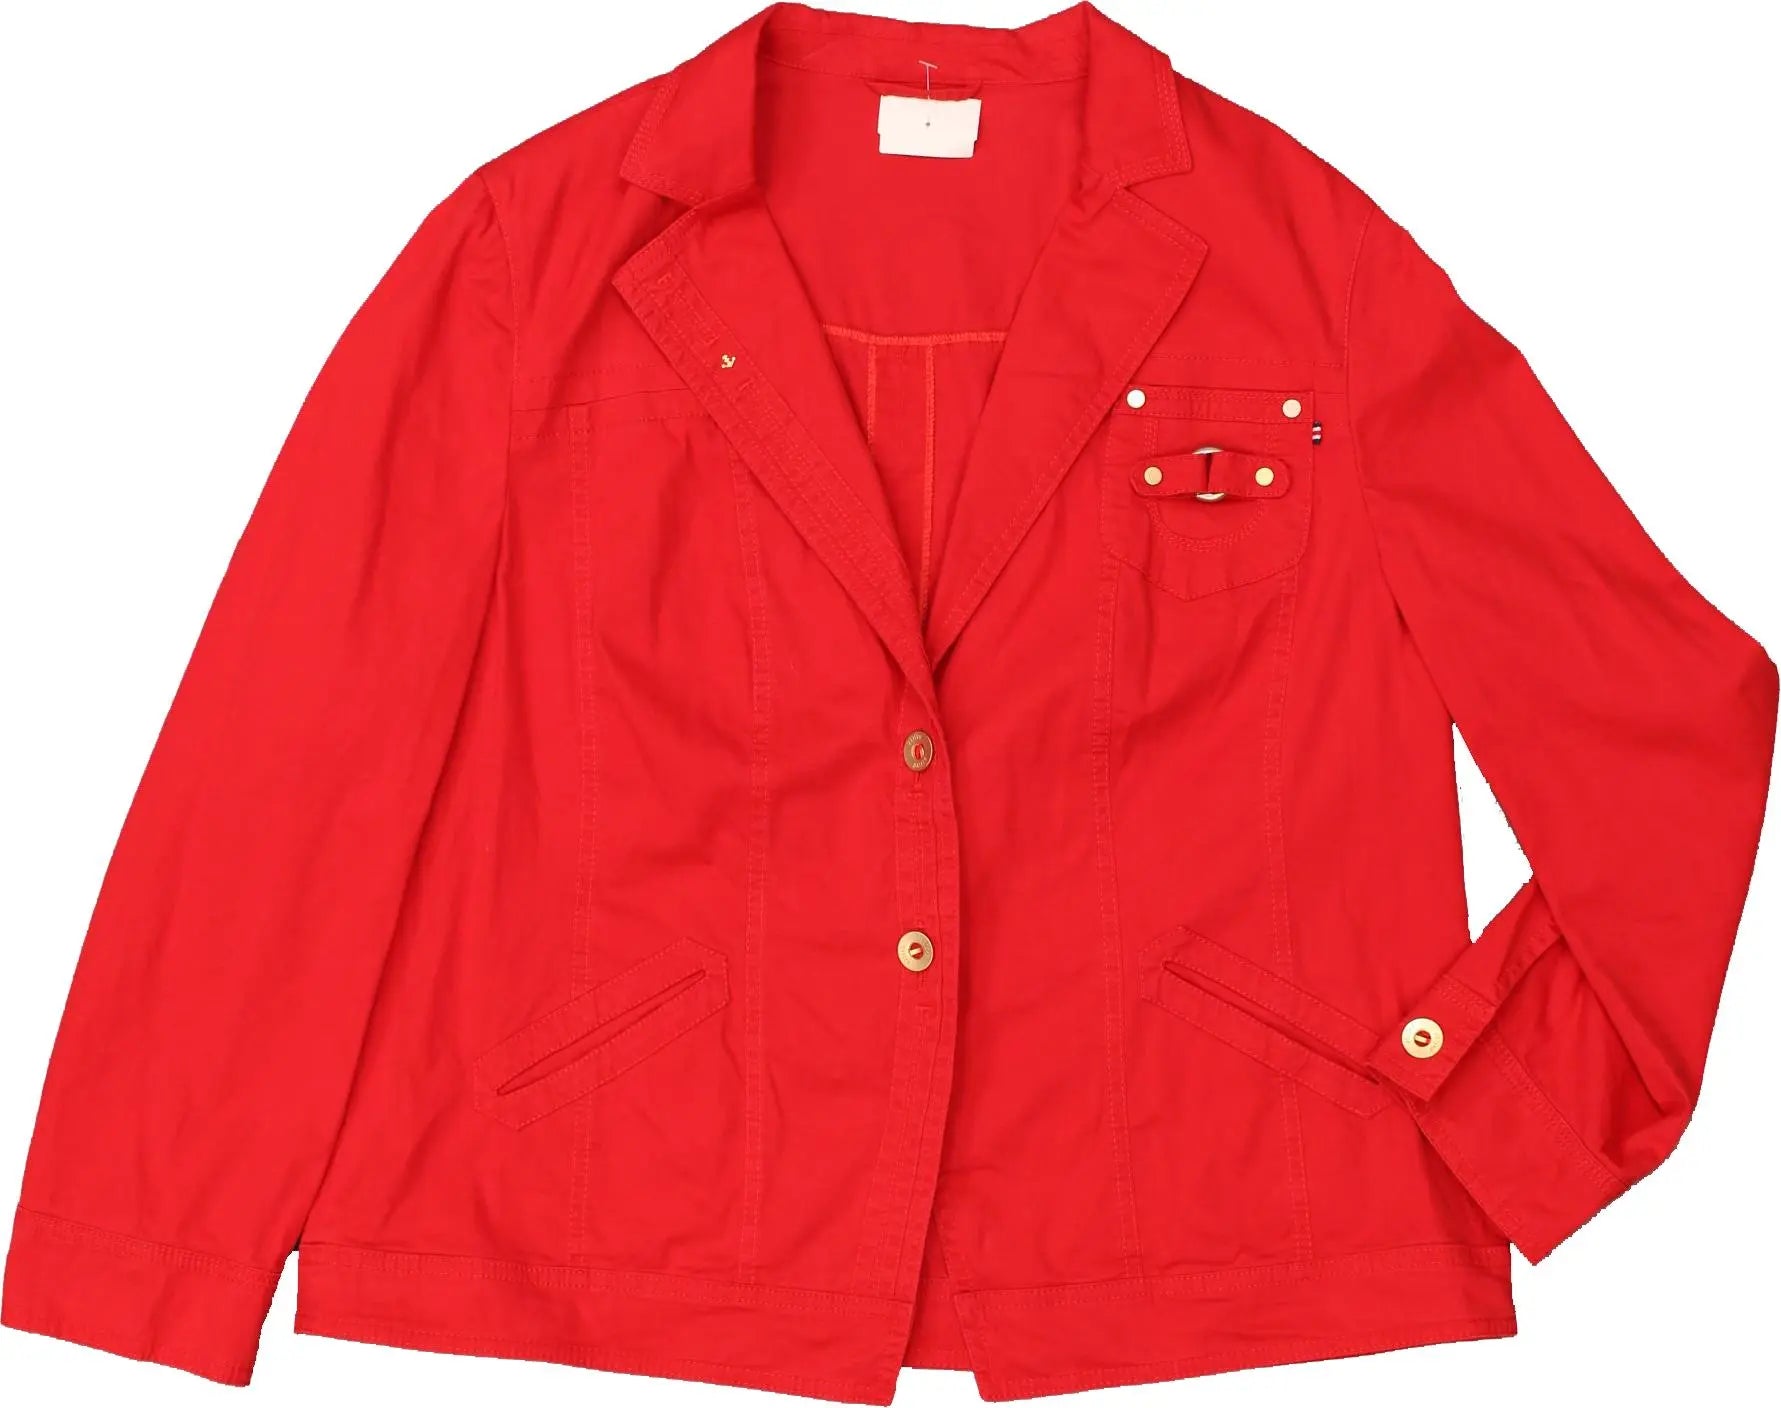 BASLER - Red Jacket by Basler- ThriftTale.com - Vintage and second handclothing